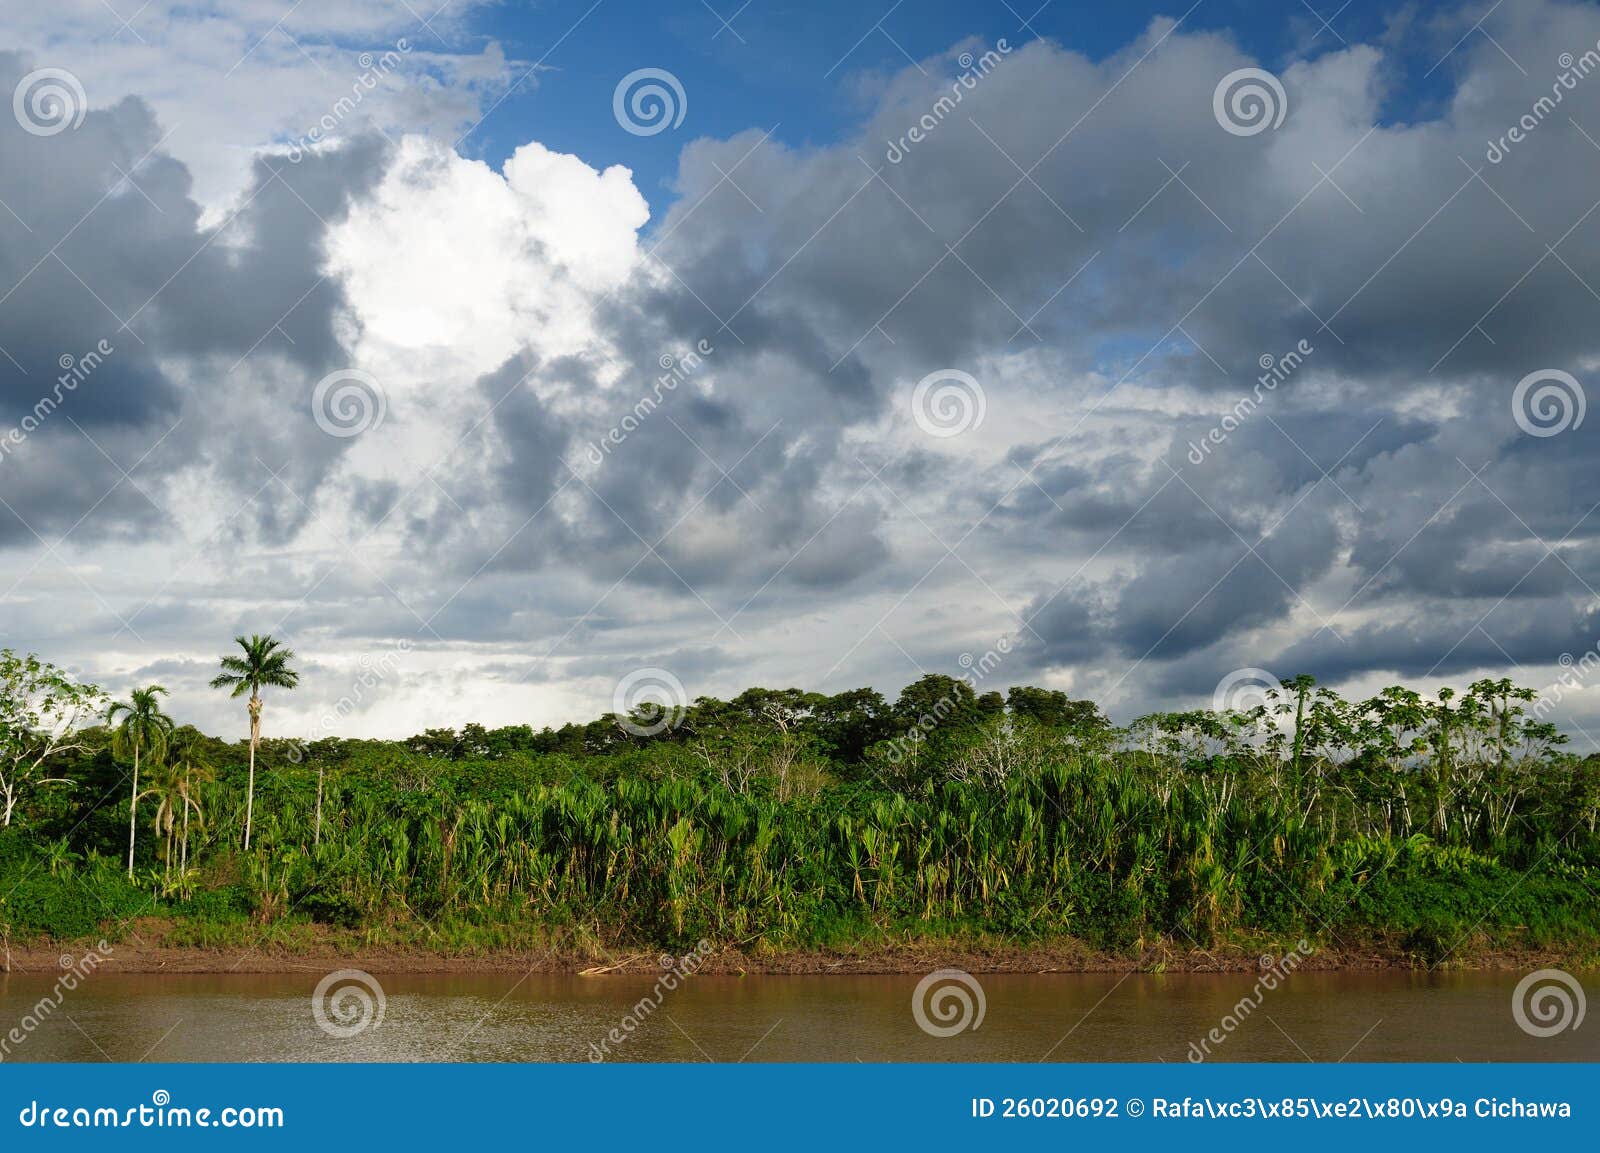 peruvian amazonas, maranon river landscape